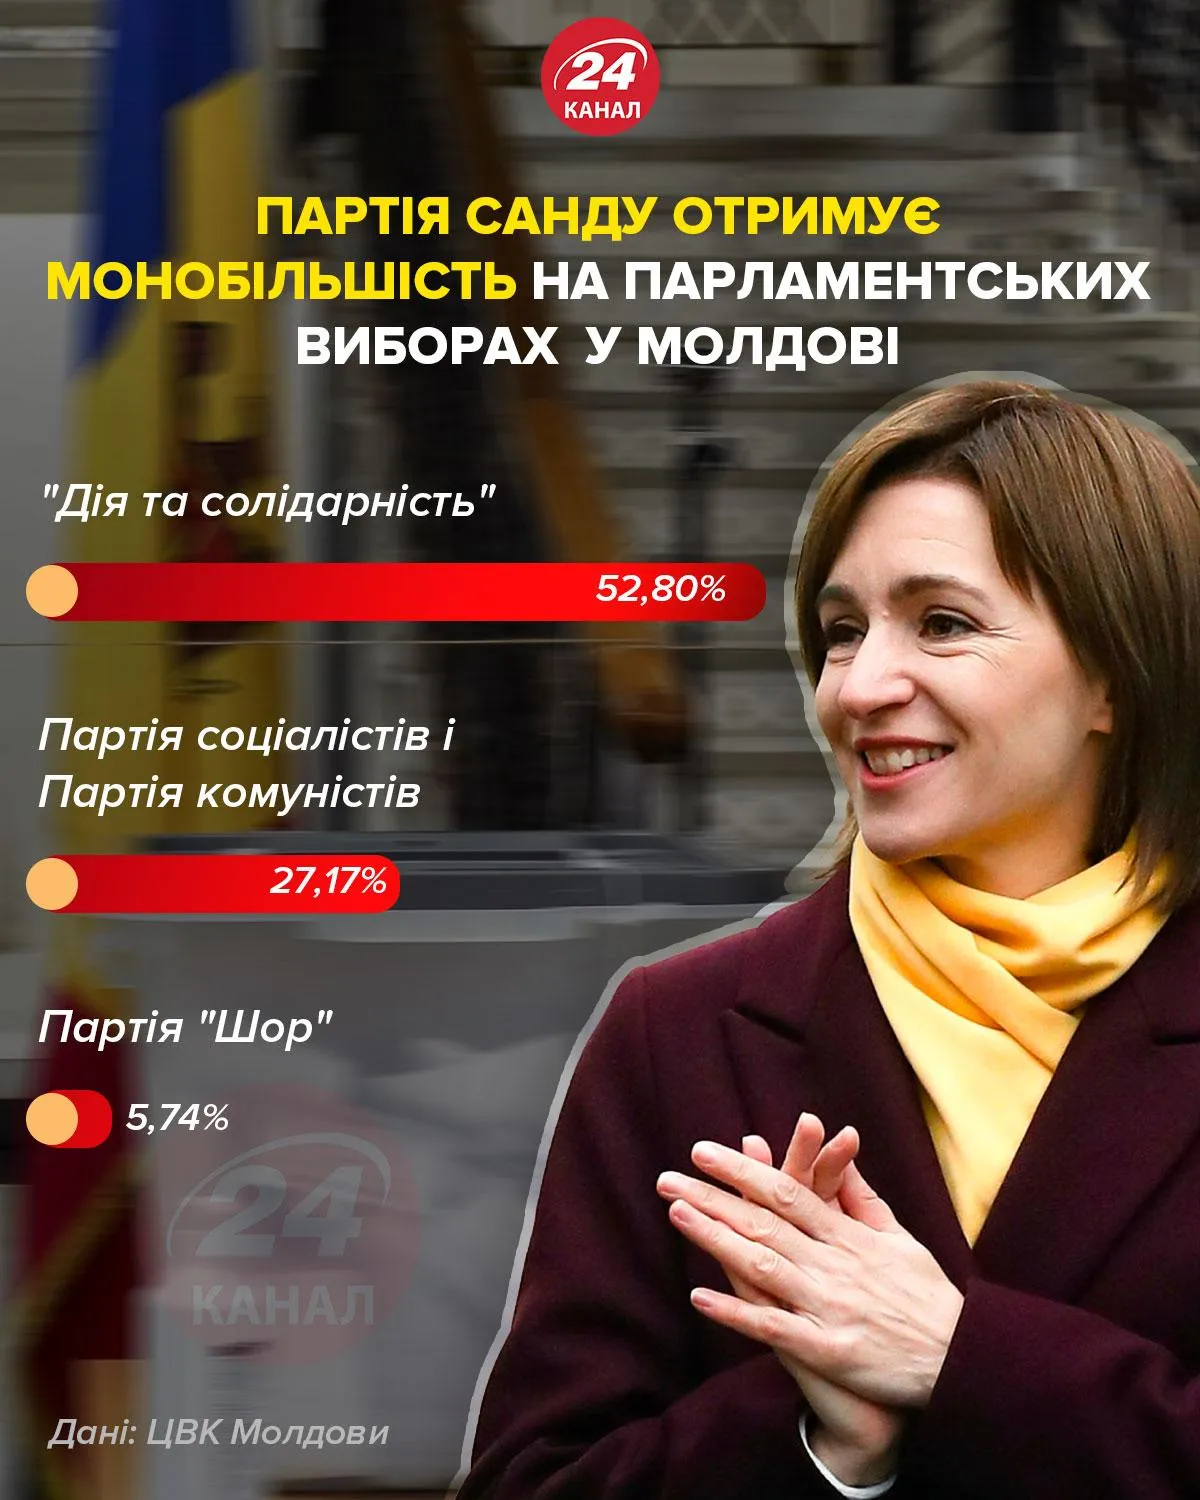 Партія Санду отримує монобільшість на парламентських виборах у Молдові / Інфографіка 24 каналу